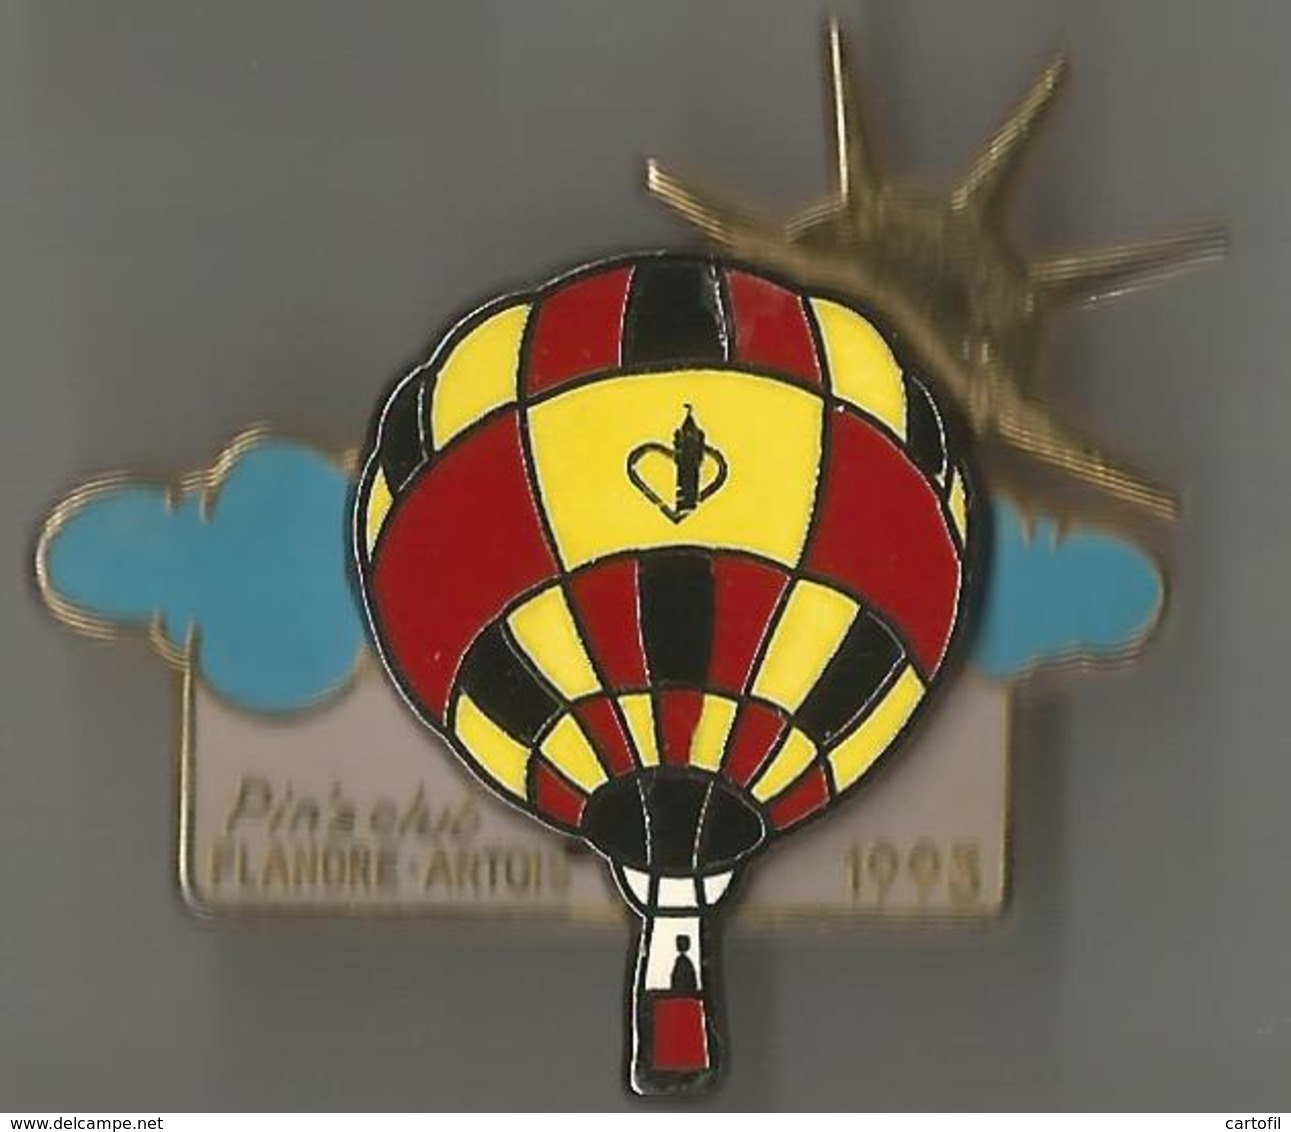 Pin's Pin's Club Flandre-Artois 1993 (montgolfière) - Montgolfières